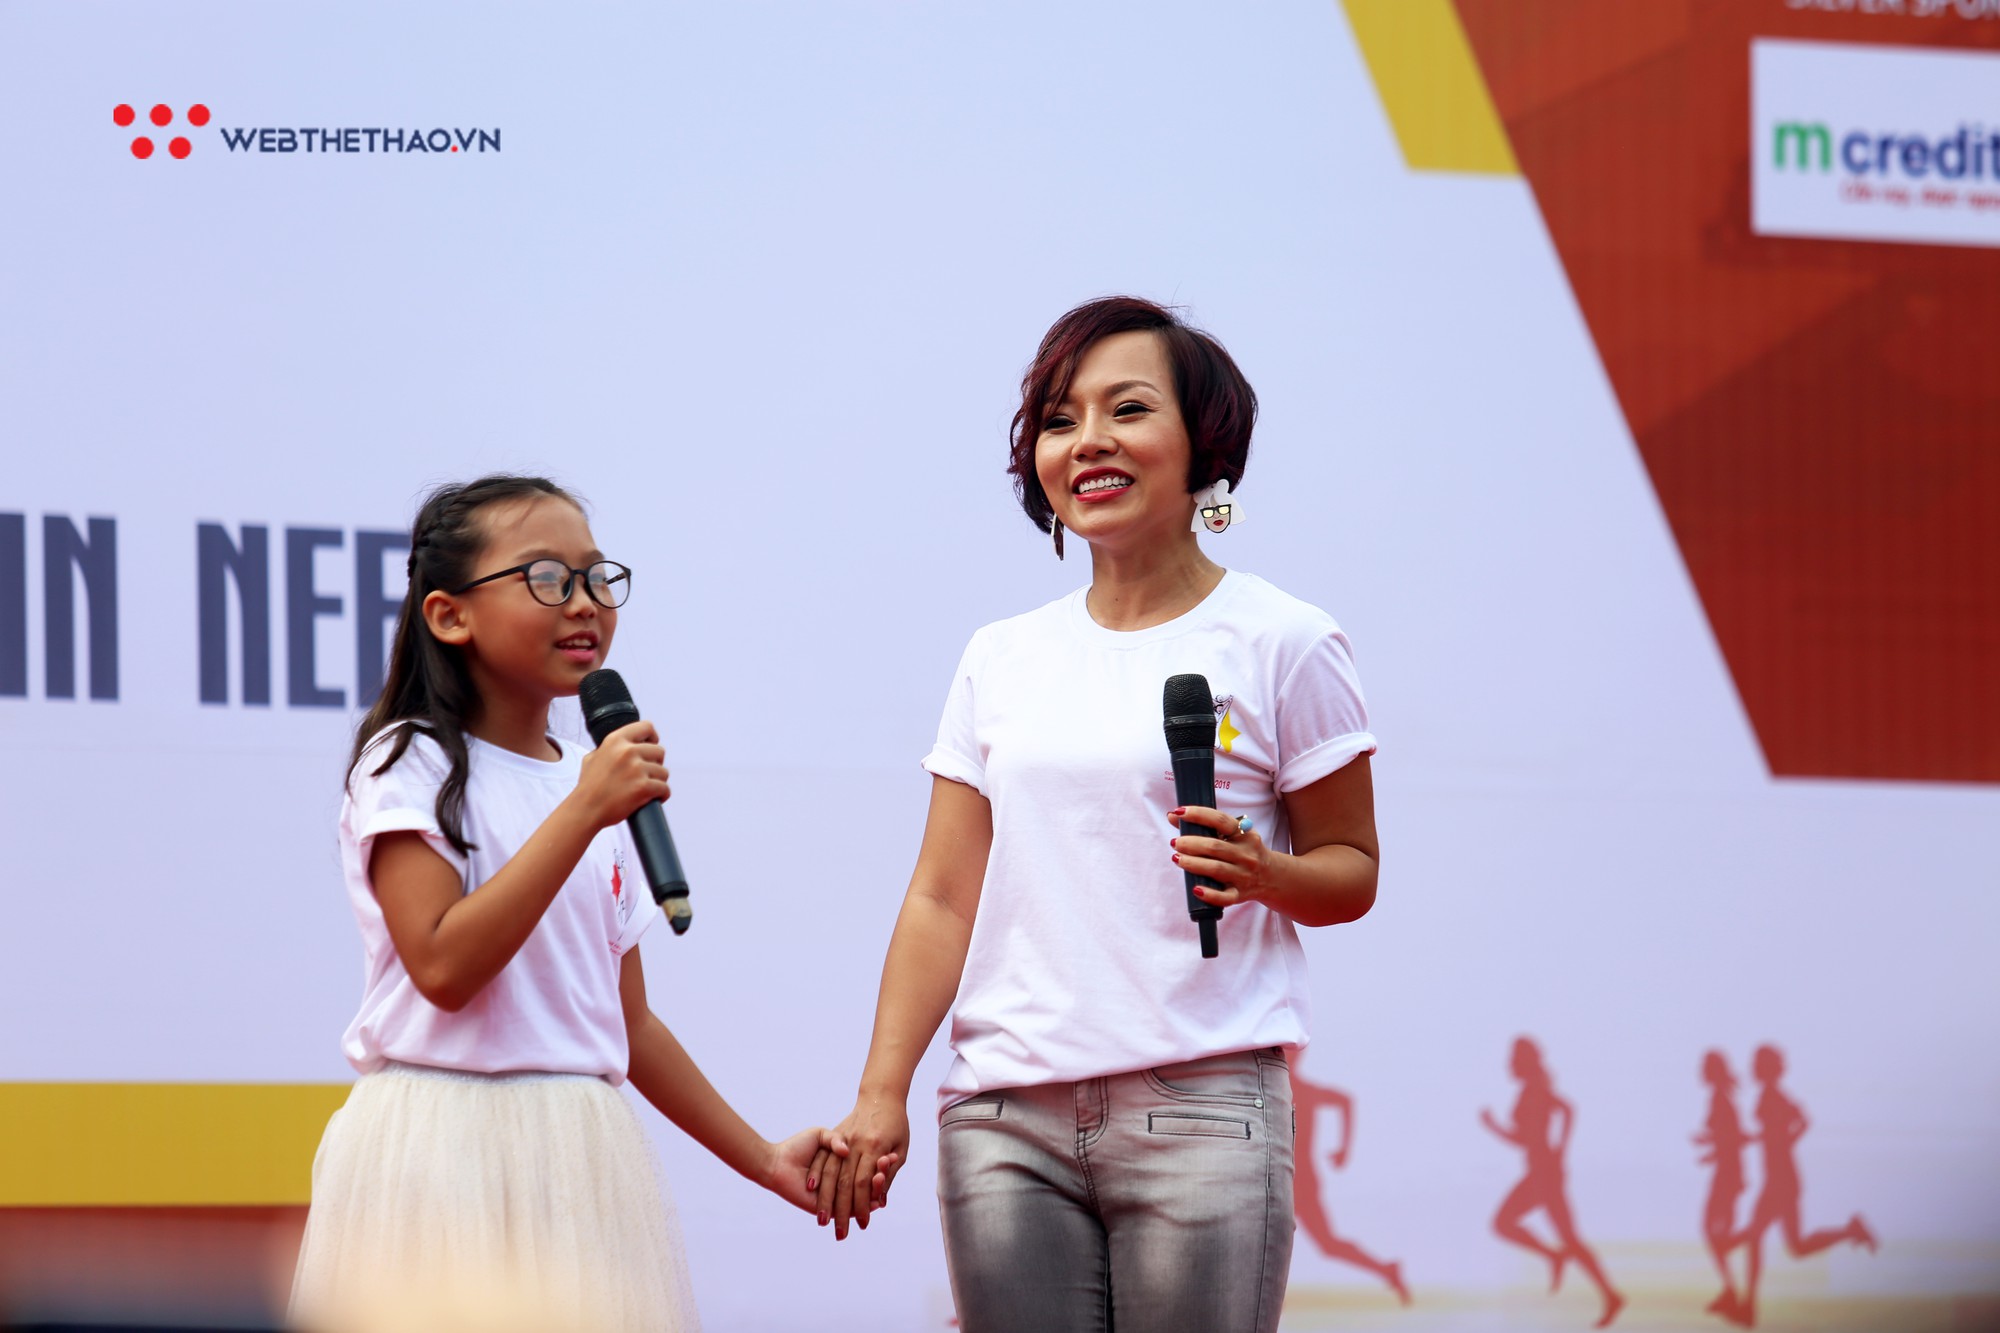 Ca sĩ Thái Thùy Linh, Đức Tuấn ‘quẩy’ nhiệt tình tại Chạy vì trẻ em Hà Nội 2018 - Ảnh 5.